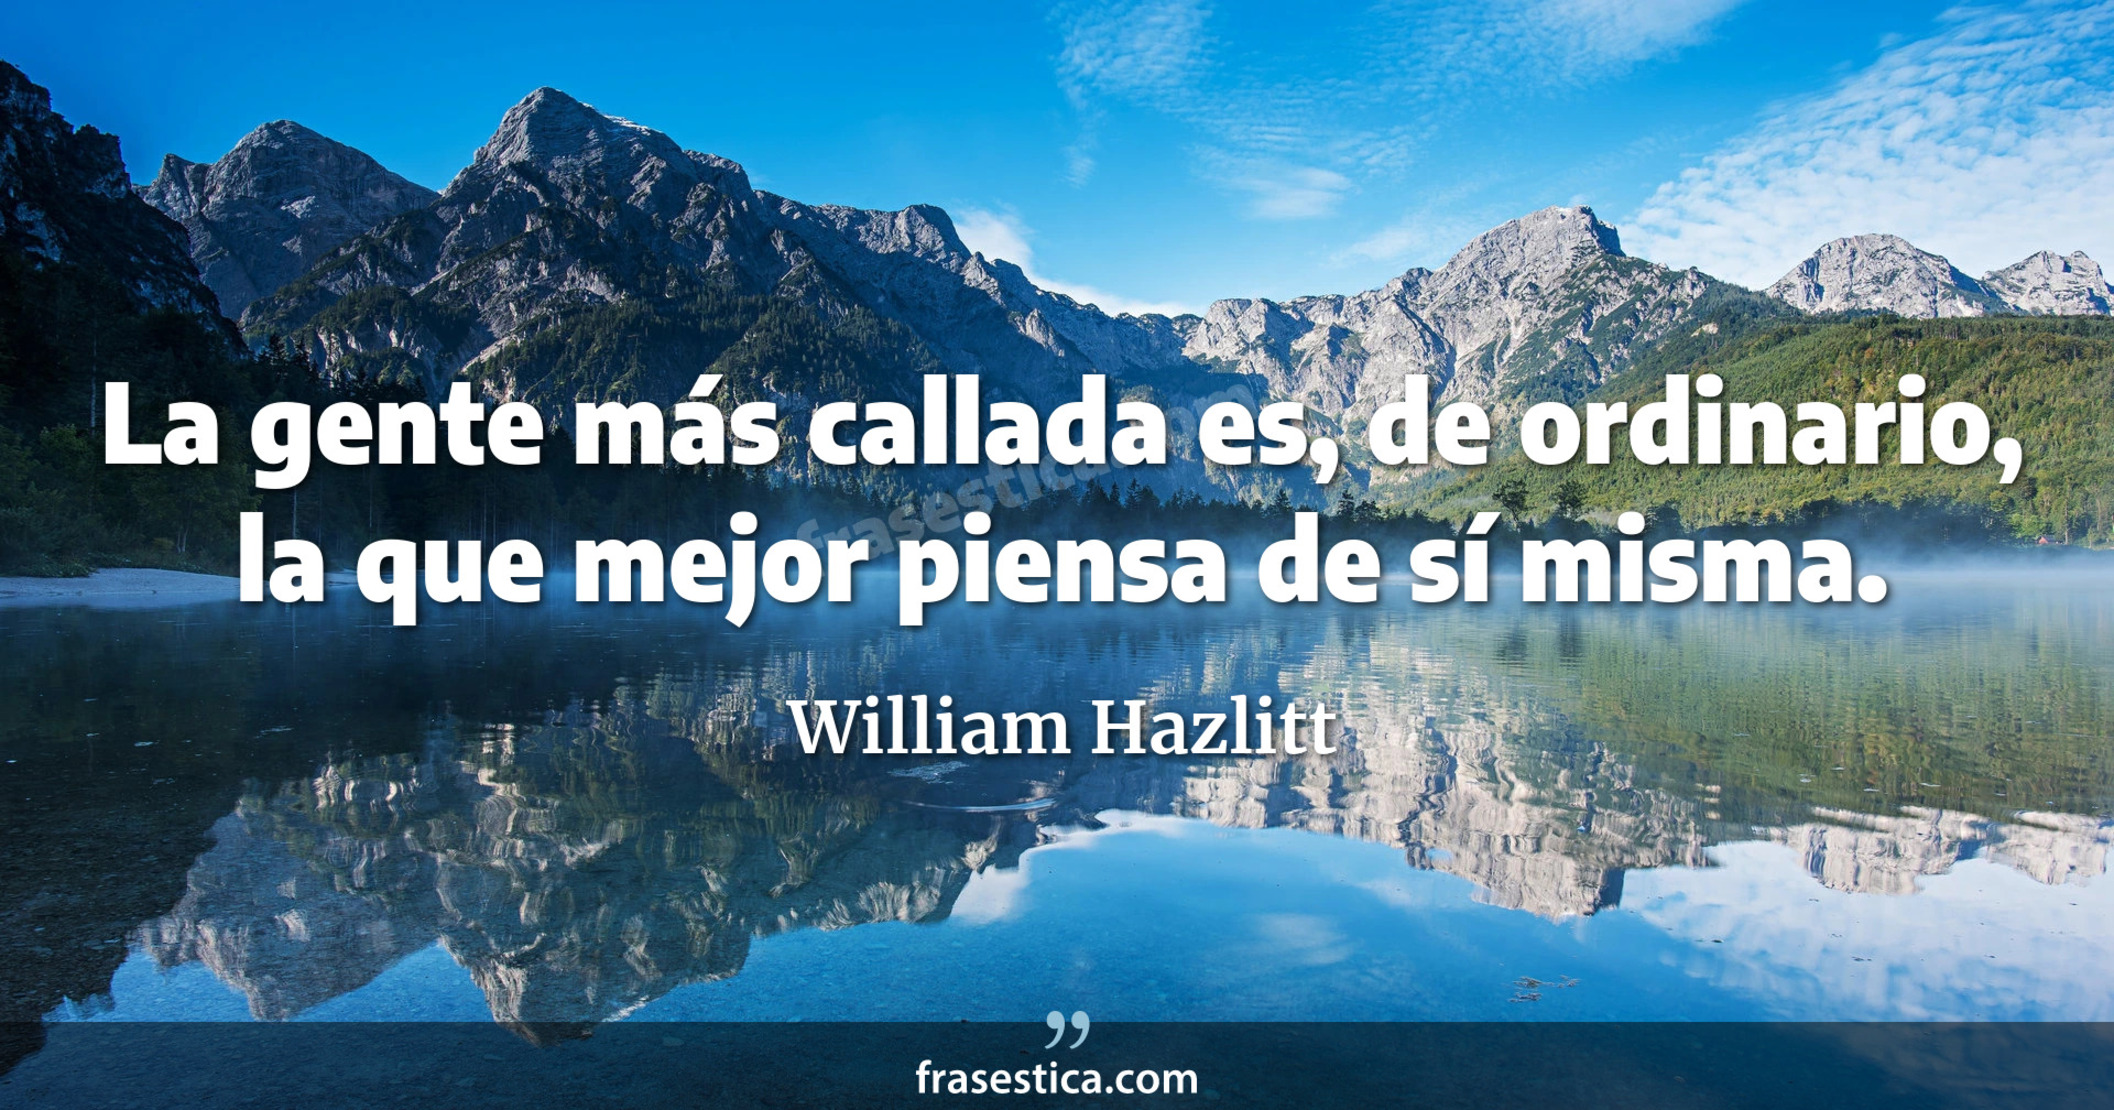 La gente más callada es, de ordinario, la que mejor piensa de sí misma. - William Hazlitt